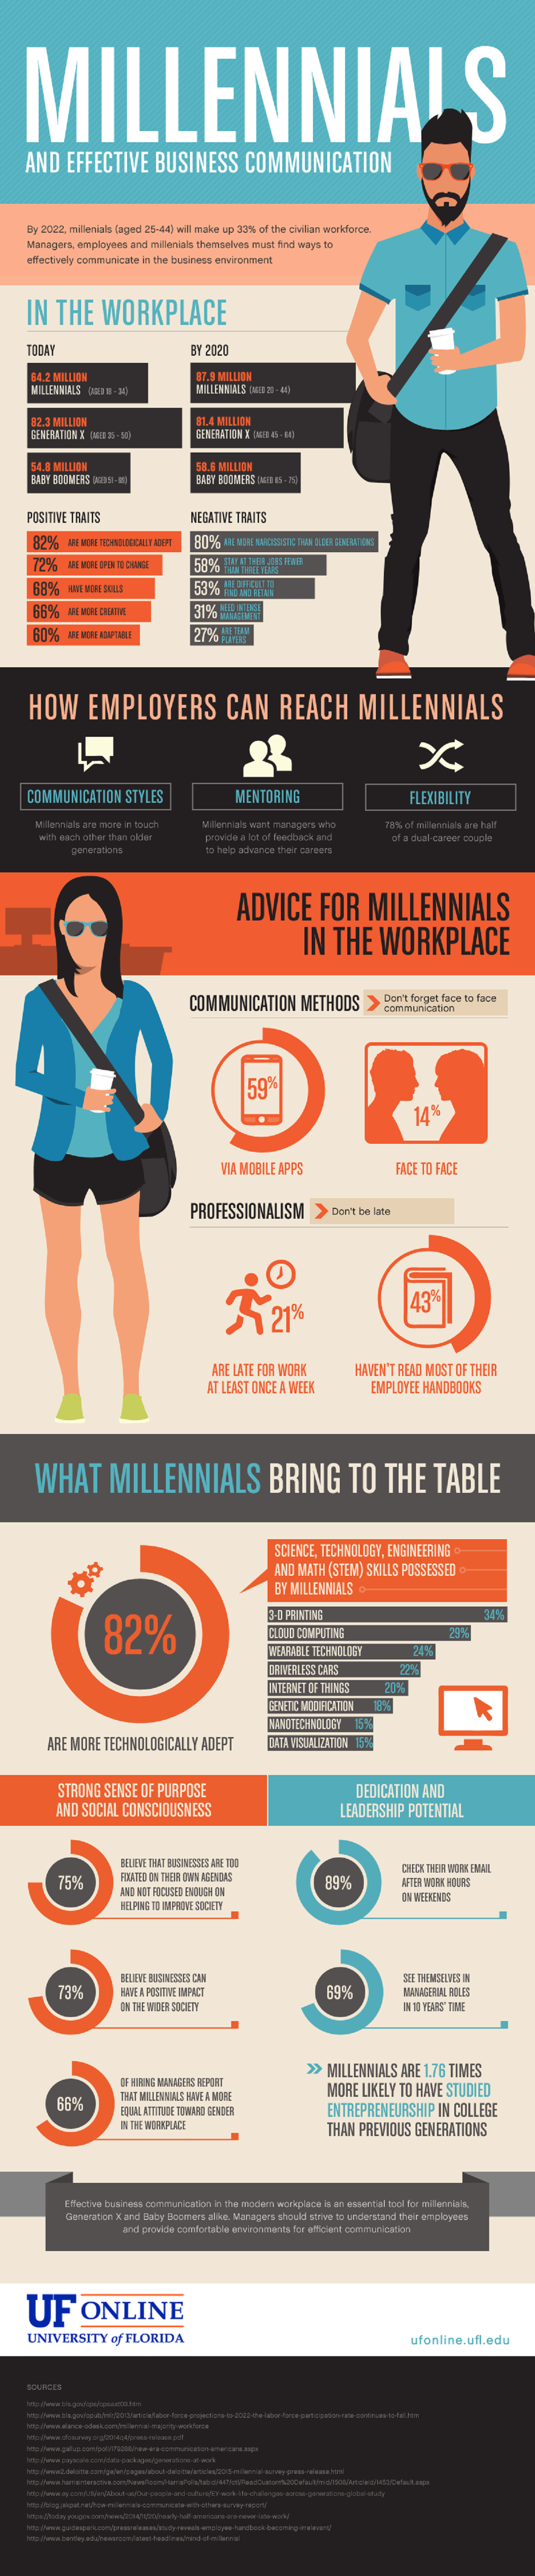 millennials-effective-business-communication-infographic